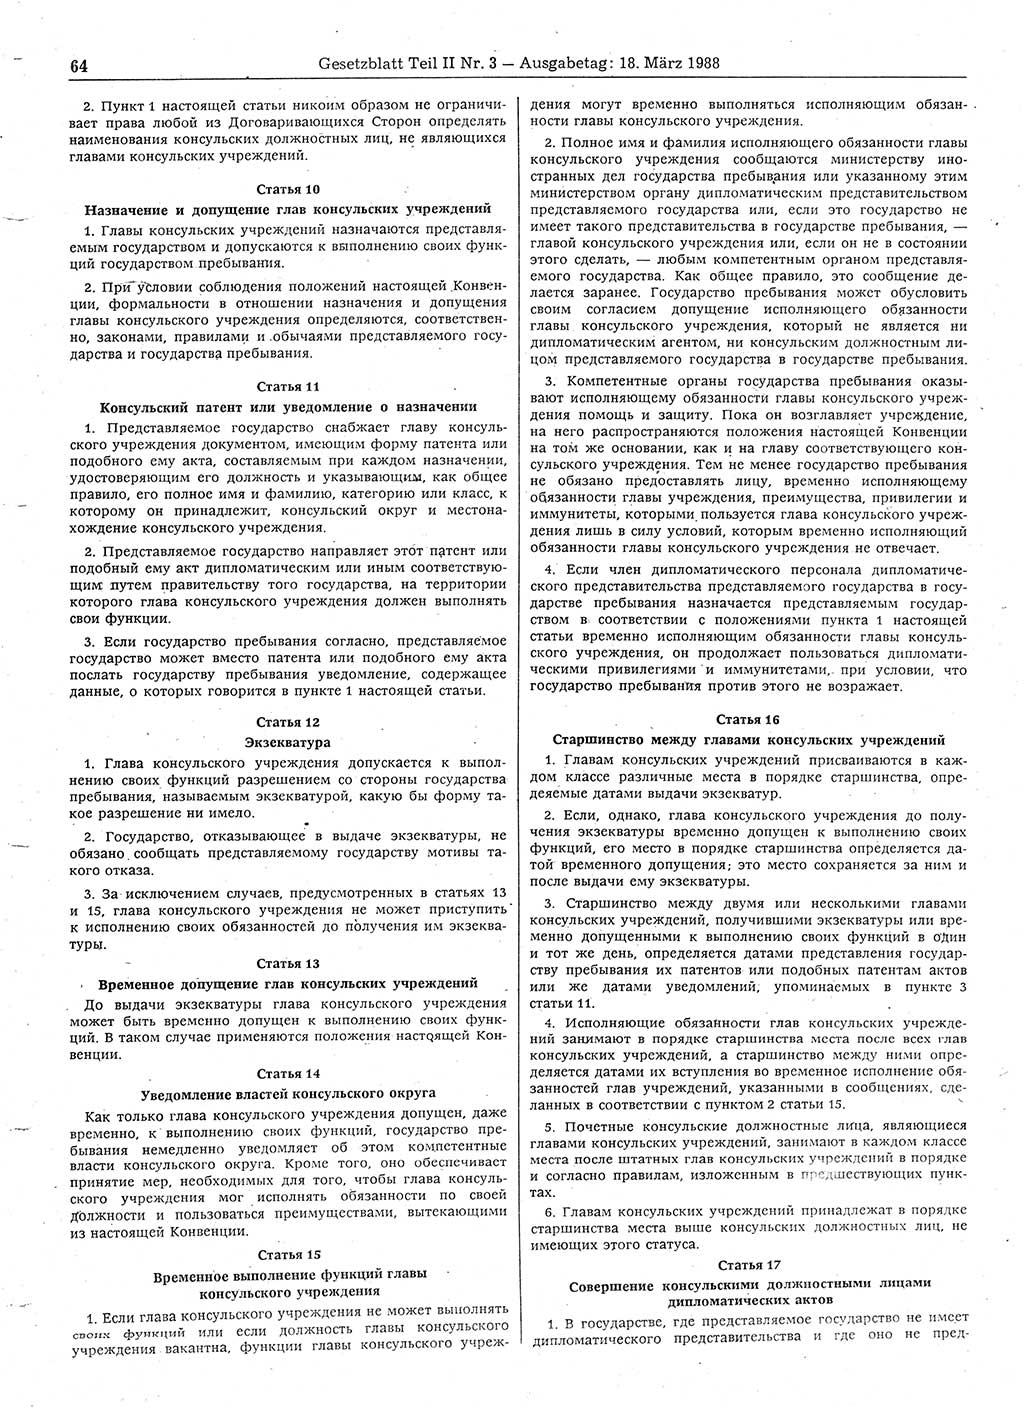 Gesetzblatt (GBl.) der Deutschen Demokratischen Republik (DDR) Teil ⅠⅠ 1988, Seite 64 (GBl. DDR ⅠⅠ 1988, S. 64)